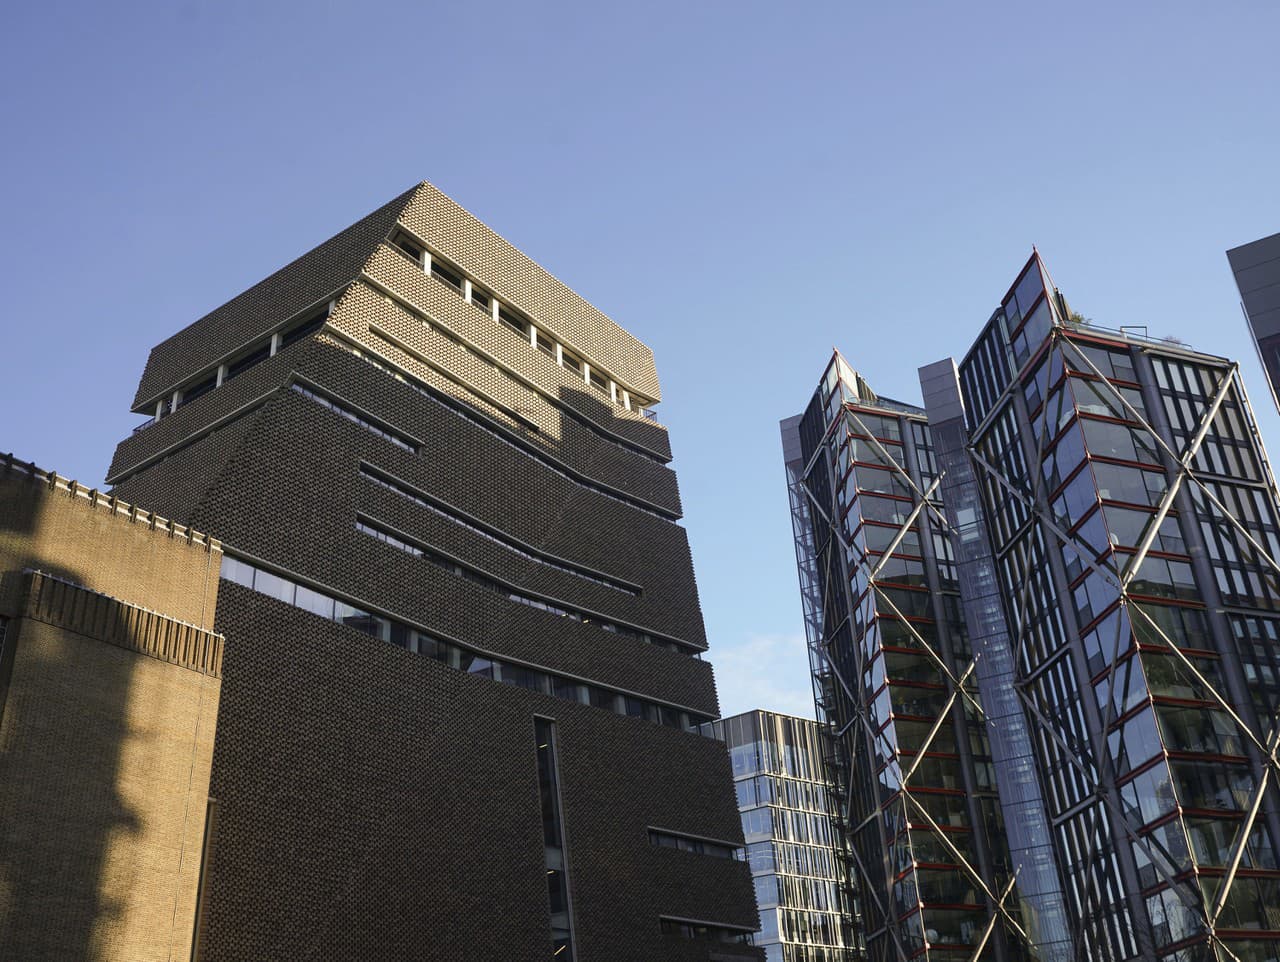 Pohľad na vyhliadkovú galériu v galérii umenia Tate Modern v južnom Londýne